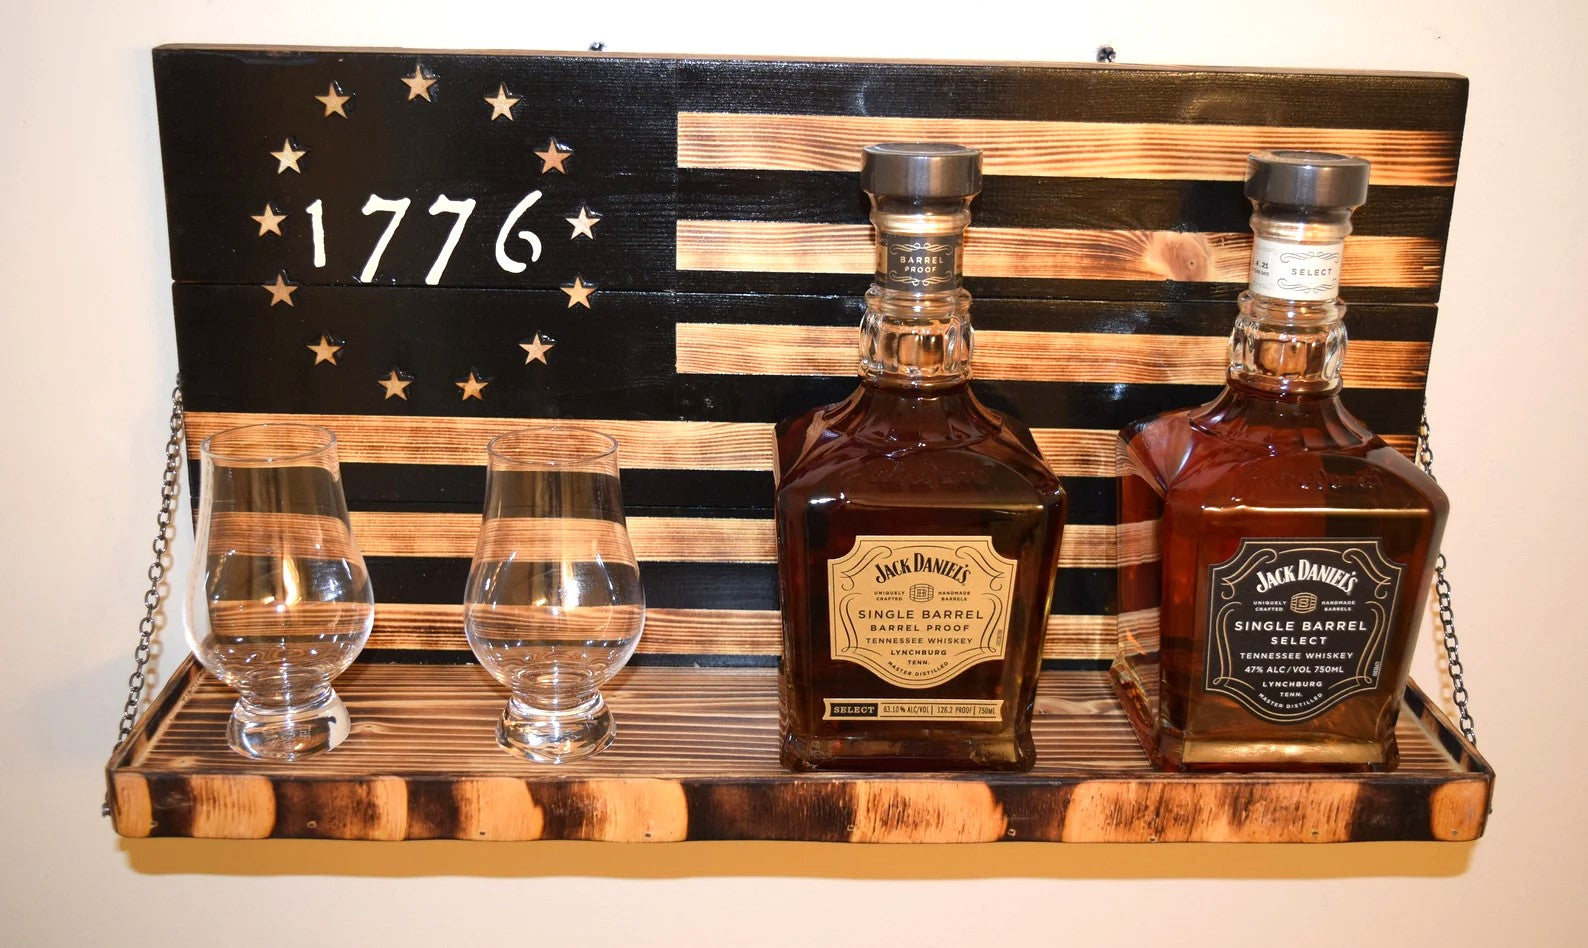 Whiskey Bottle Rack - 1776 Black and Burnt Wood